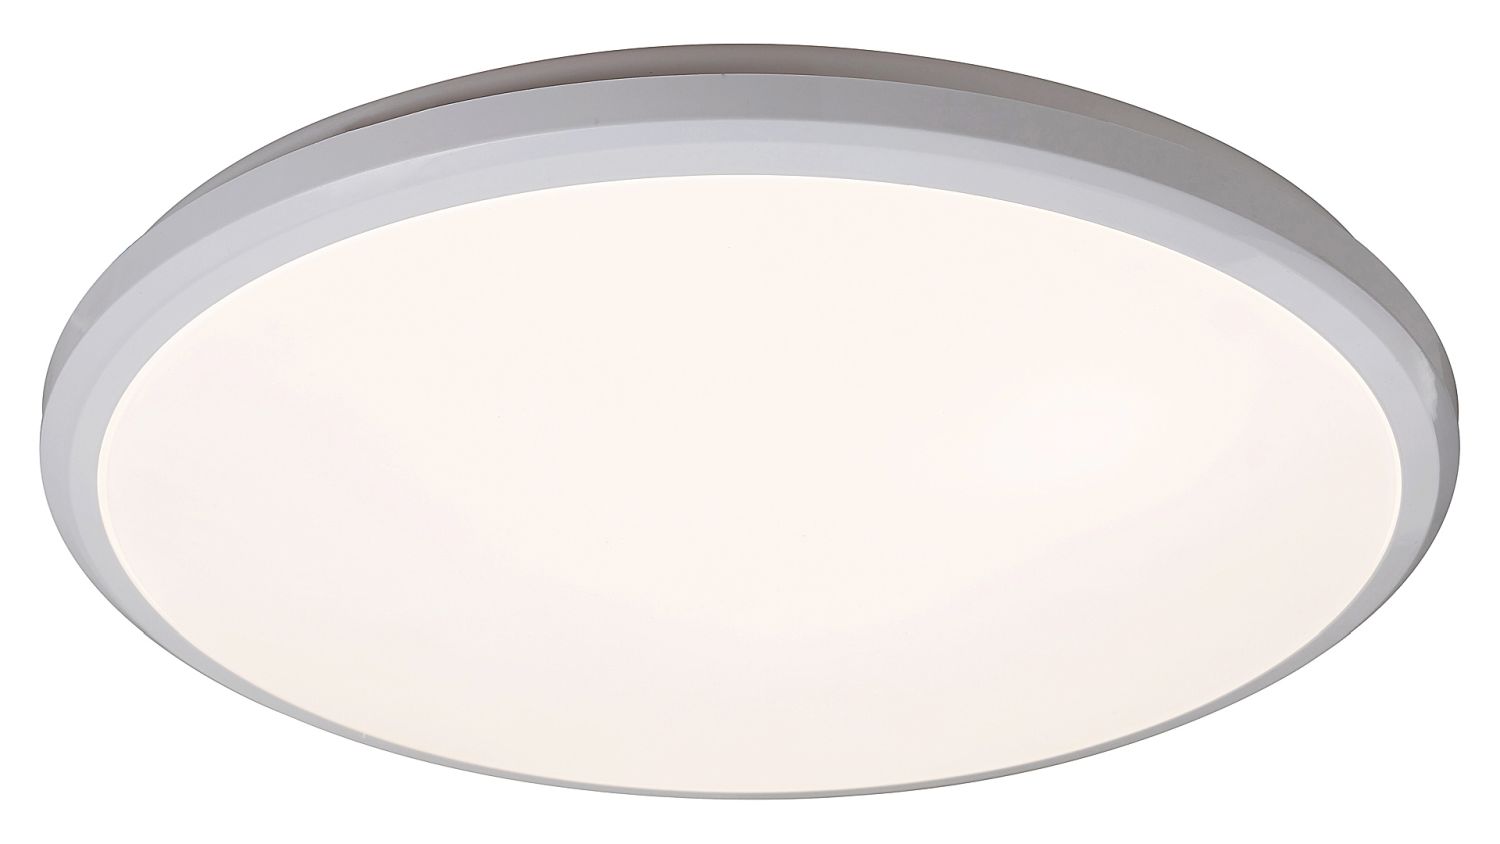 Runde LED Deckenlampe Bad Ø31,5cm IP65 neutralweiß